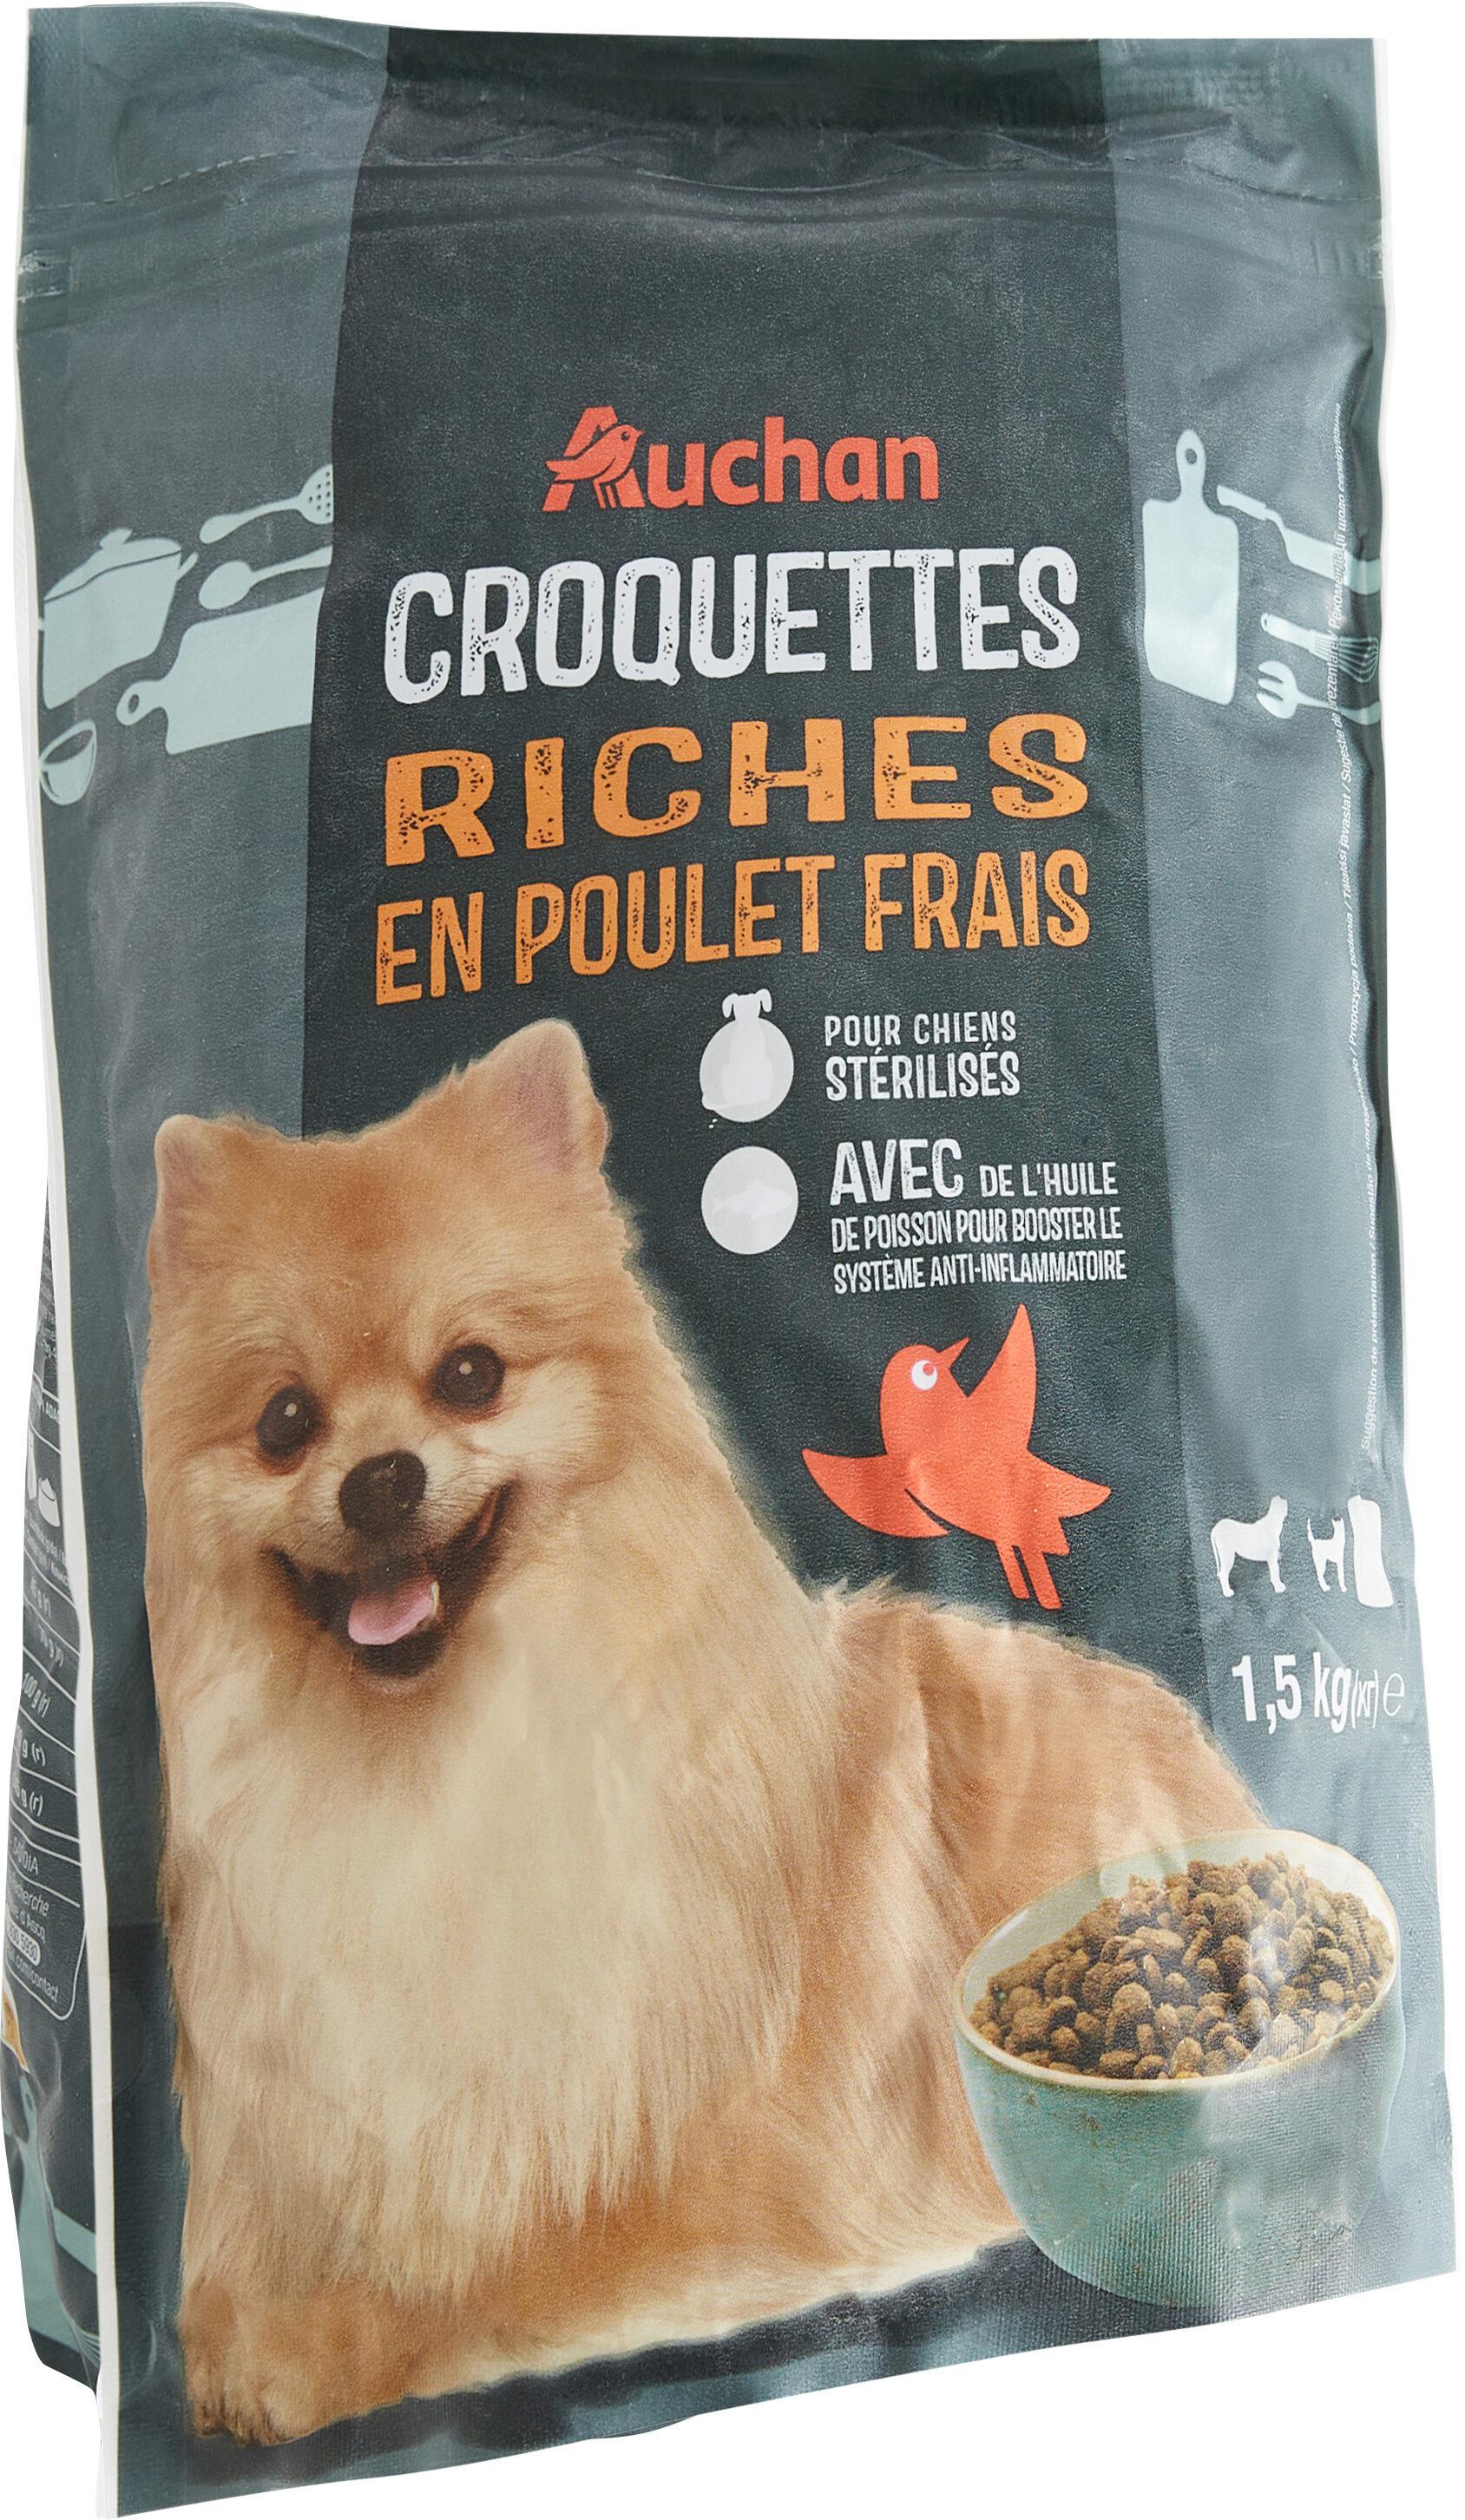 Croquette chien petit riche en poulet frais - Produit - fr